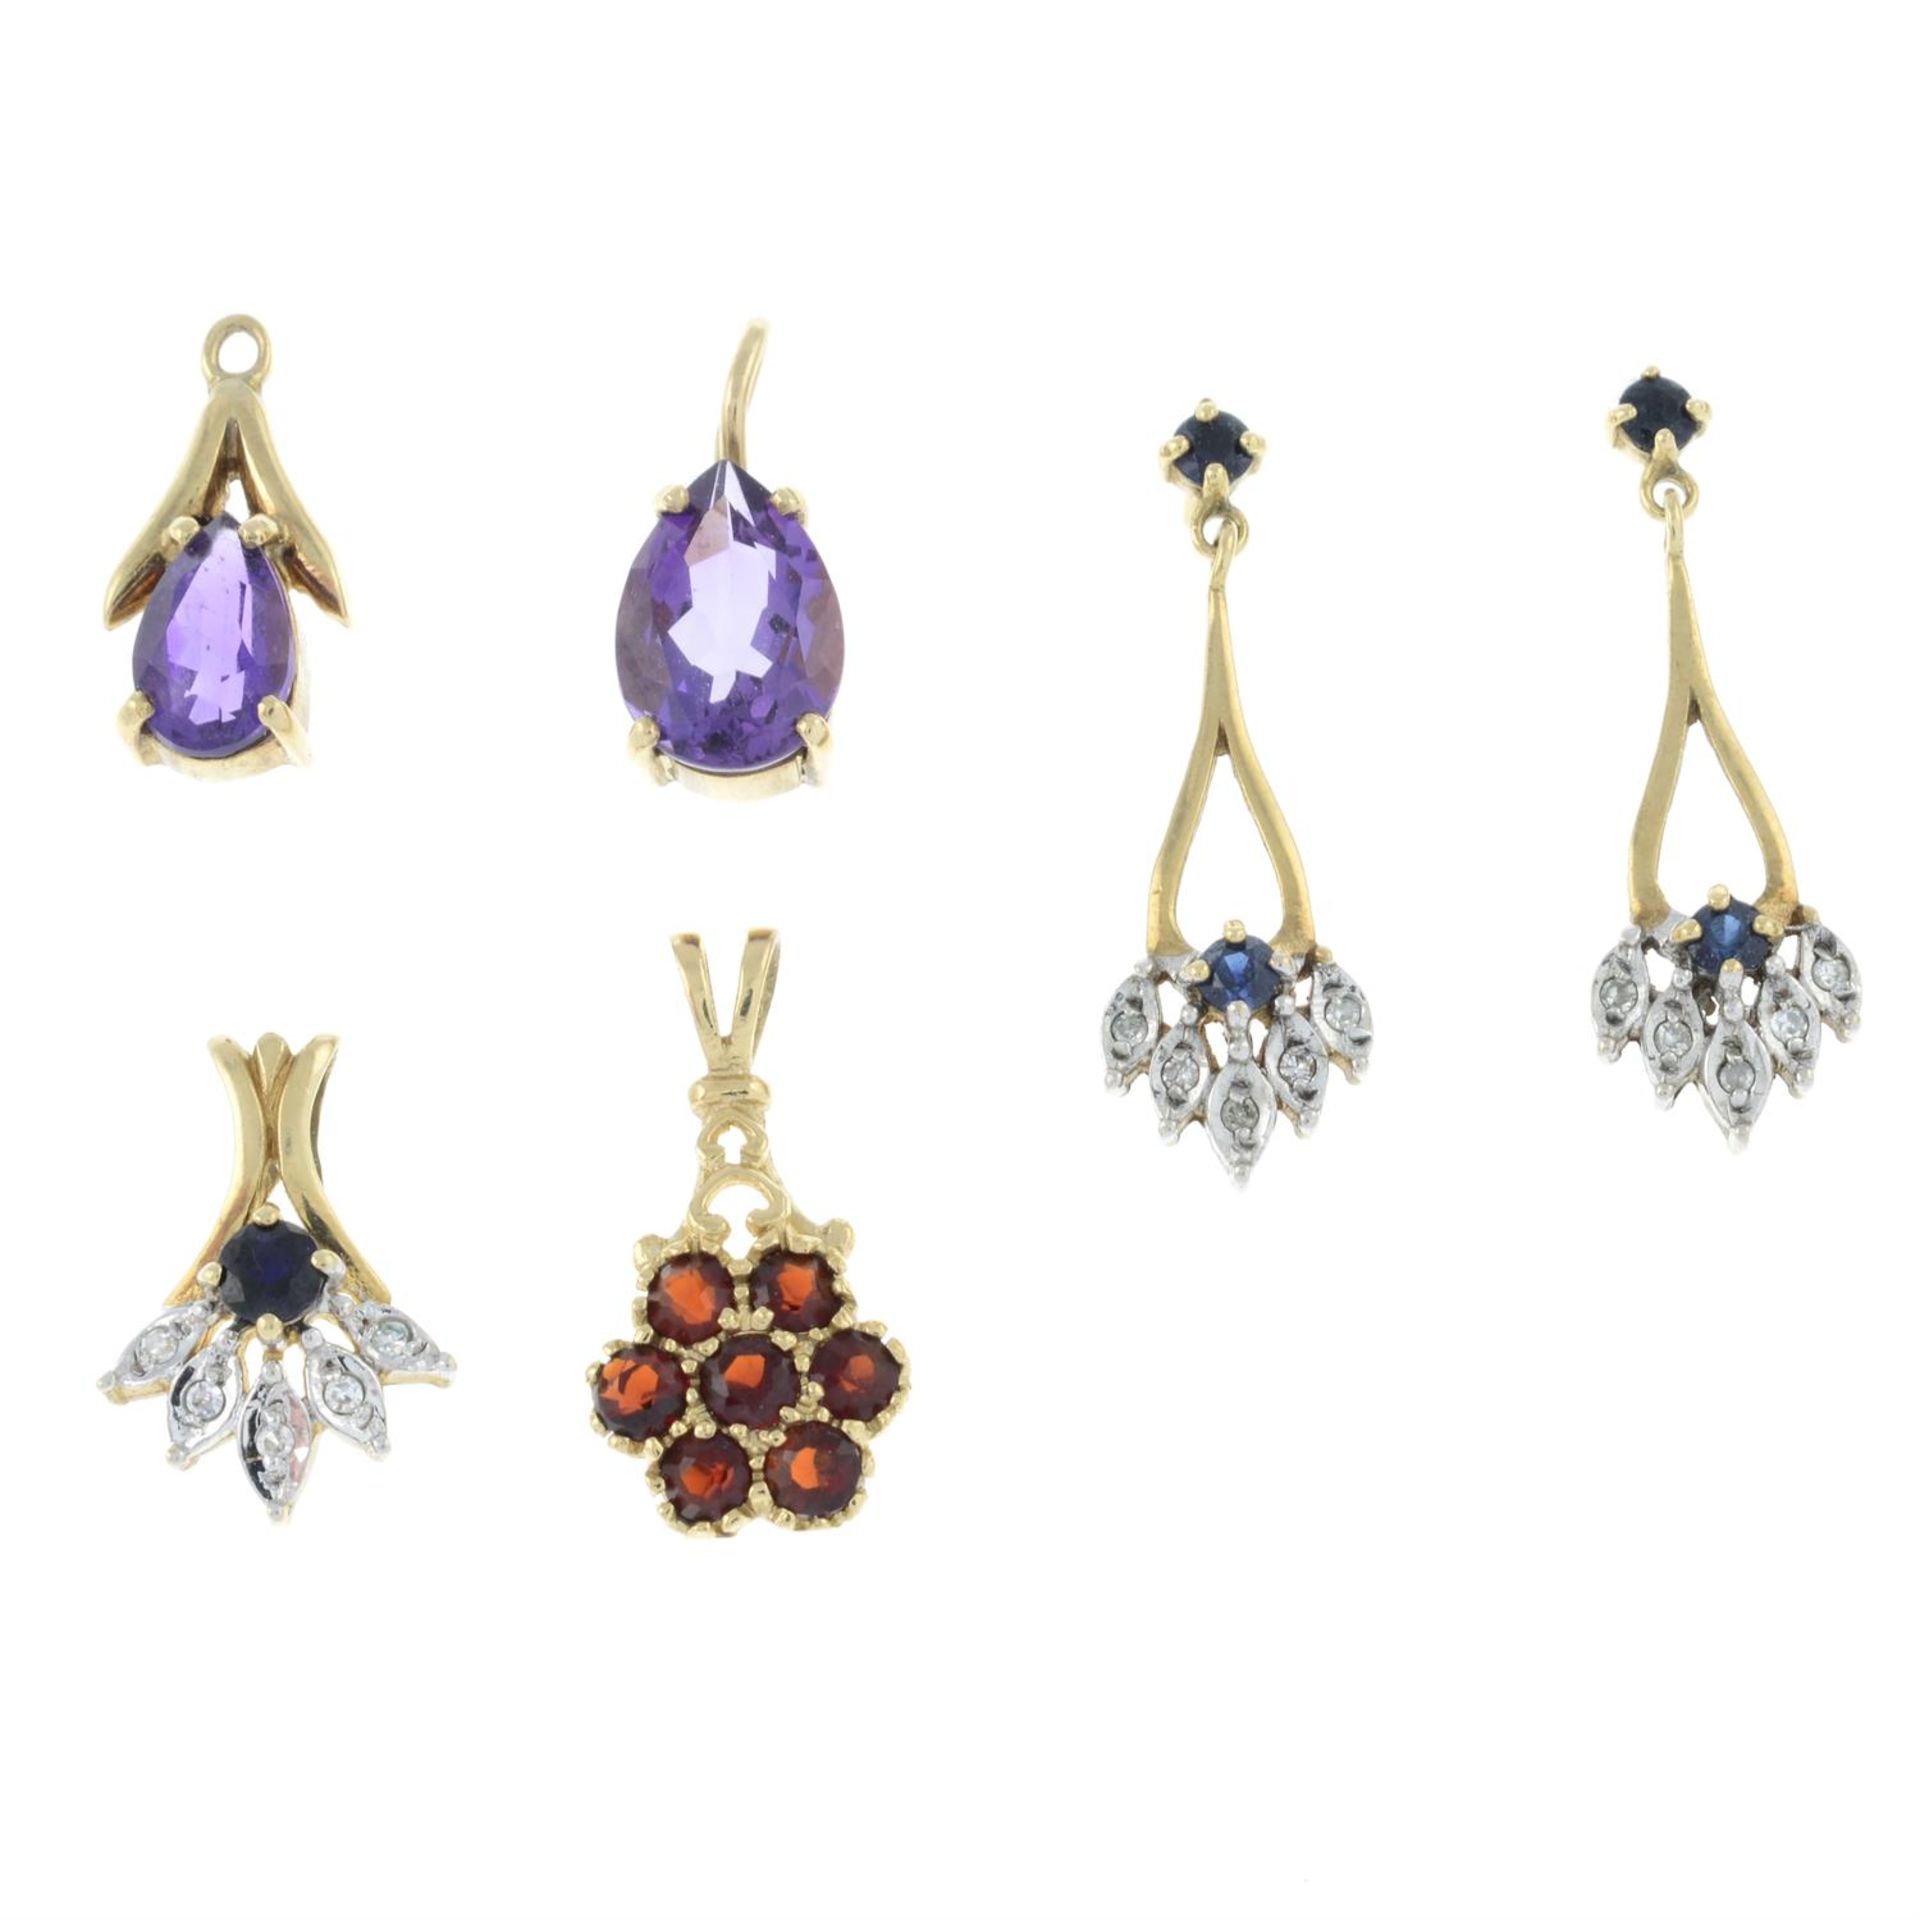 Four gem-set pendants, together with a 9ct gold gem-set pendant.